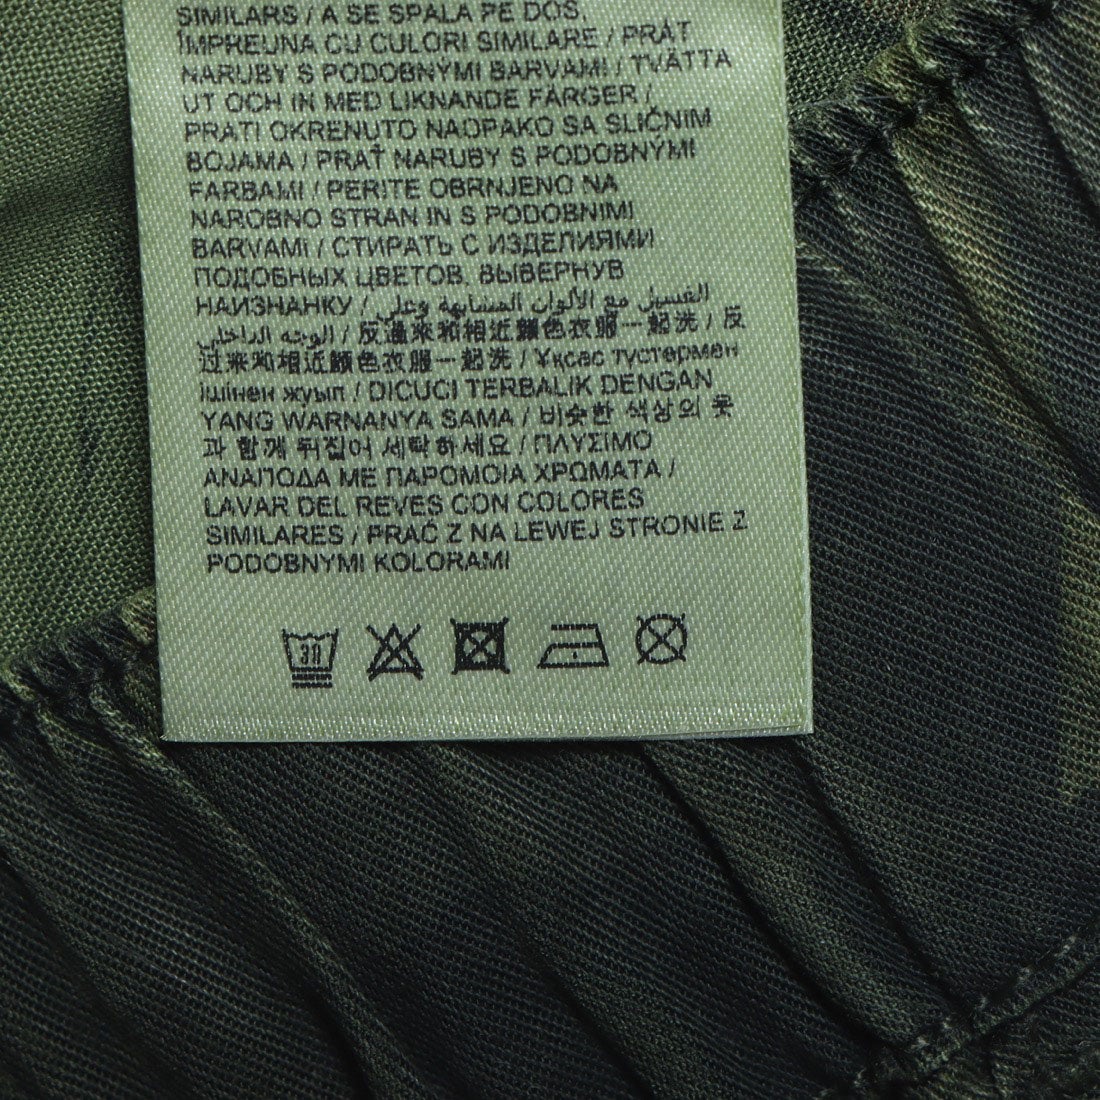 デシグアル Desigual トロピカルプリントのレディースジョガーパンツ （ピンク/レッド） -waja bazar  海外ファッションブランド通販サイト【公式】